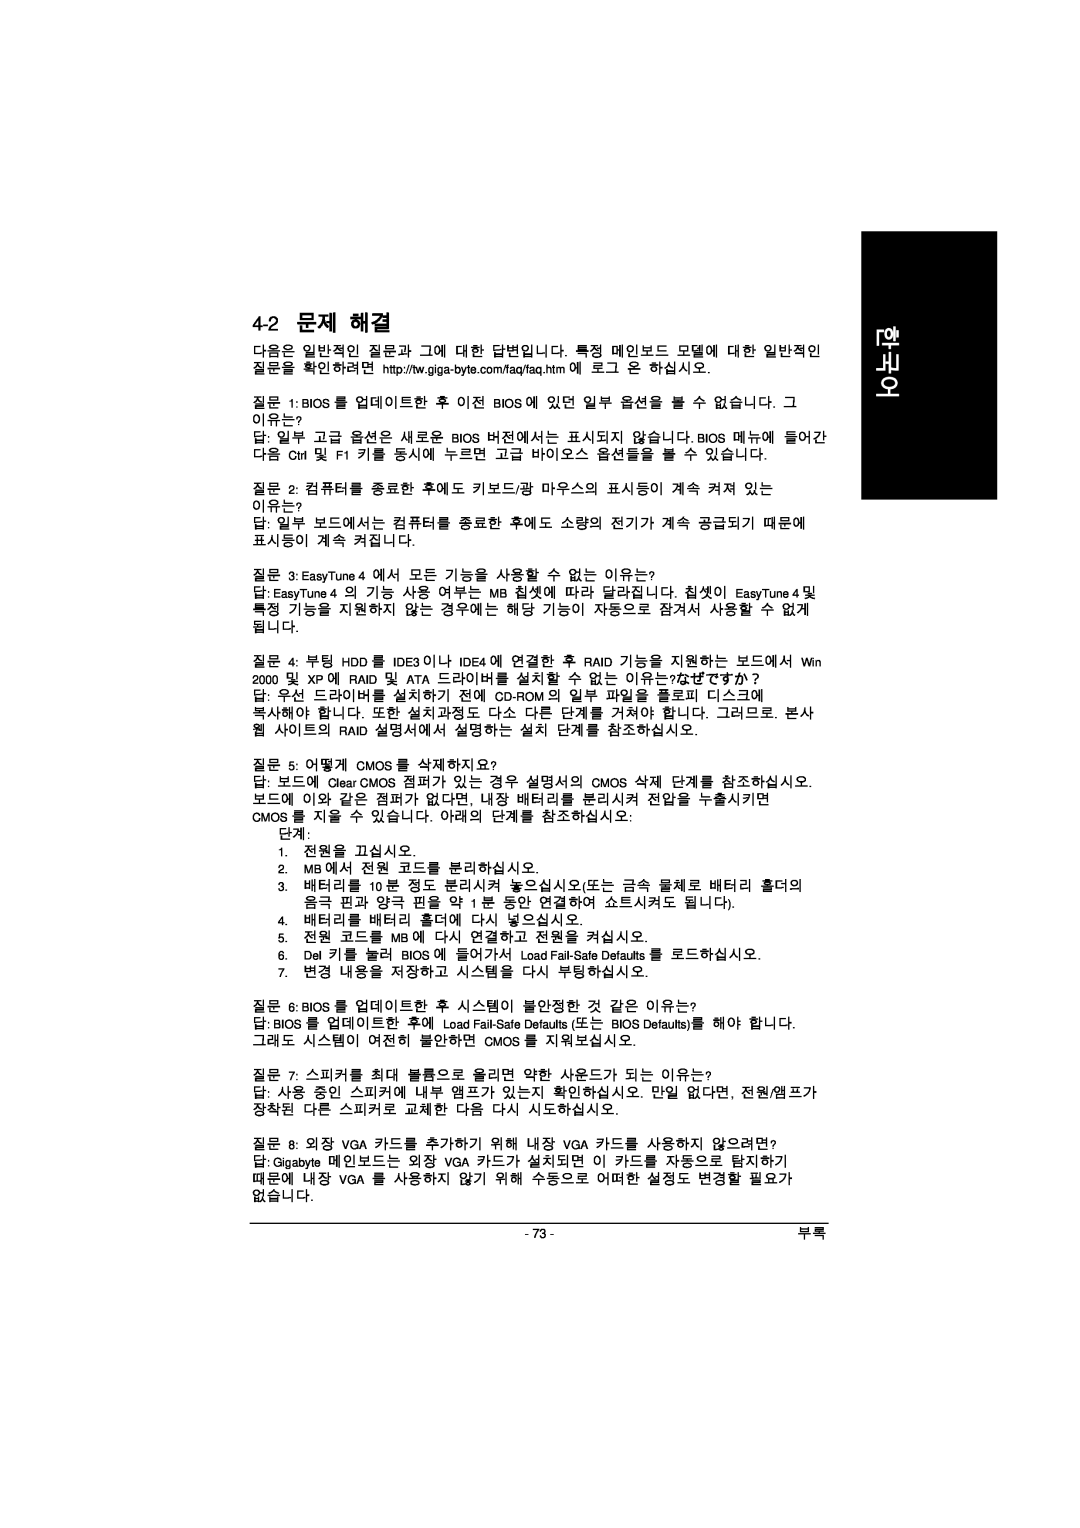 Intel GA-8IPE1000 manual 4-2 문제 해결 